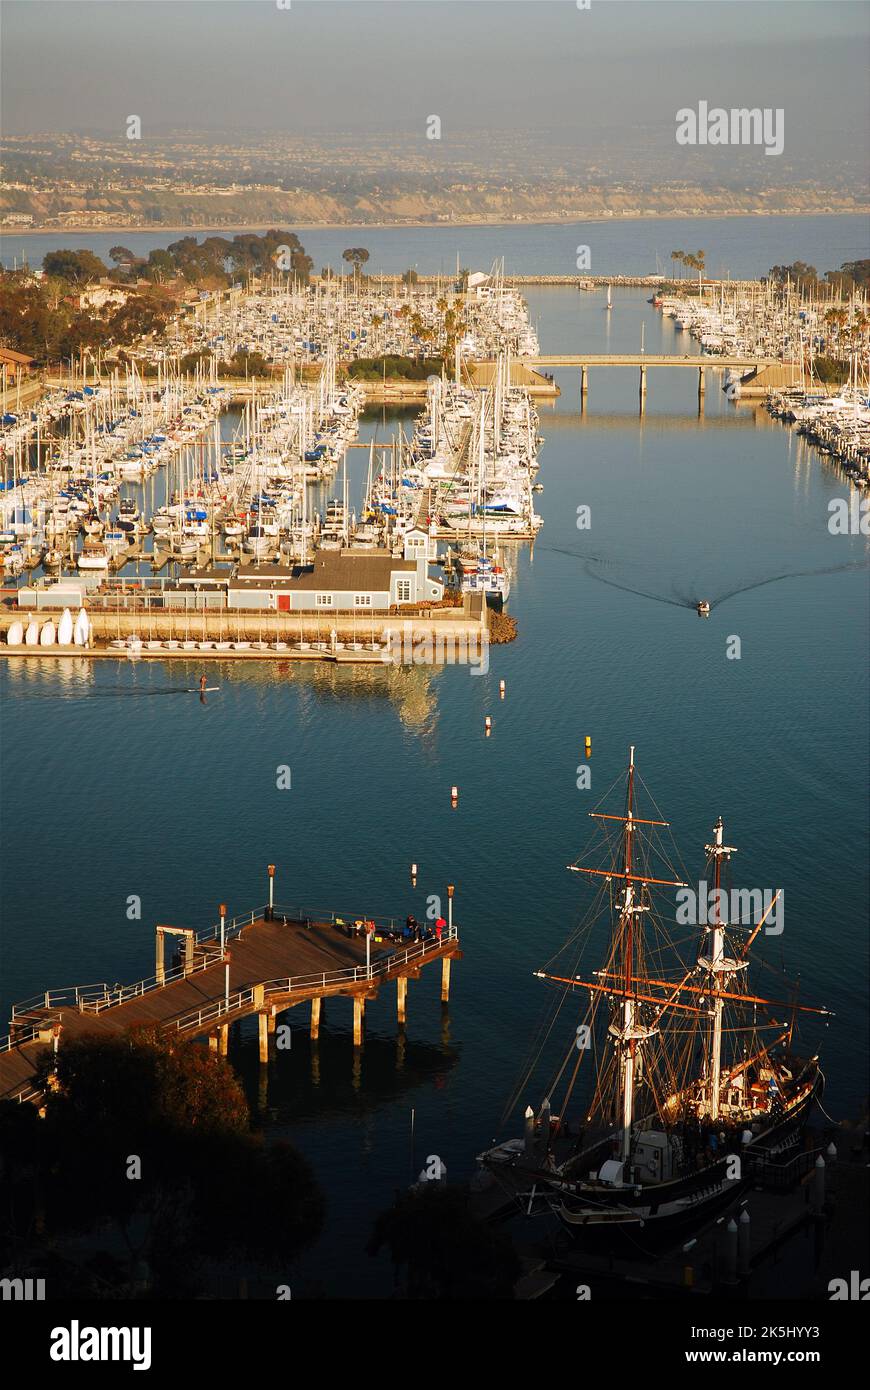 Une falaise élevée offre une vue aérienne des bateaux et des navires dans le port de plaisance et le port de Dana point dans le comté d'Orange en Californie et s'étend jusqu'à l'océan Pacifique Banque D'Images